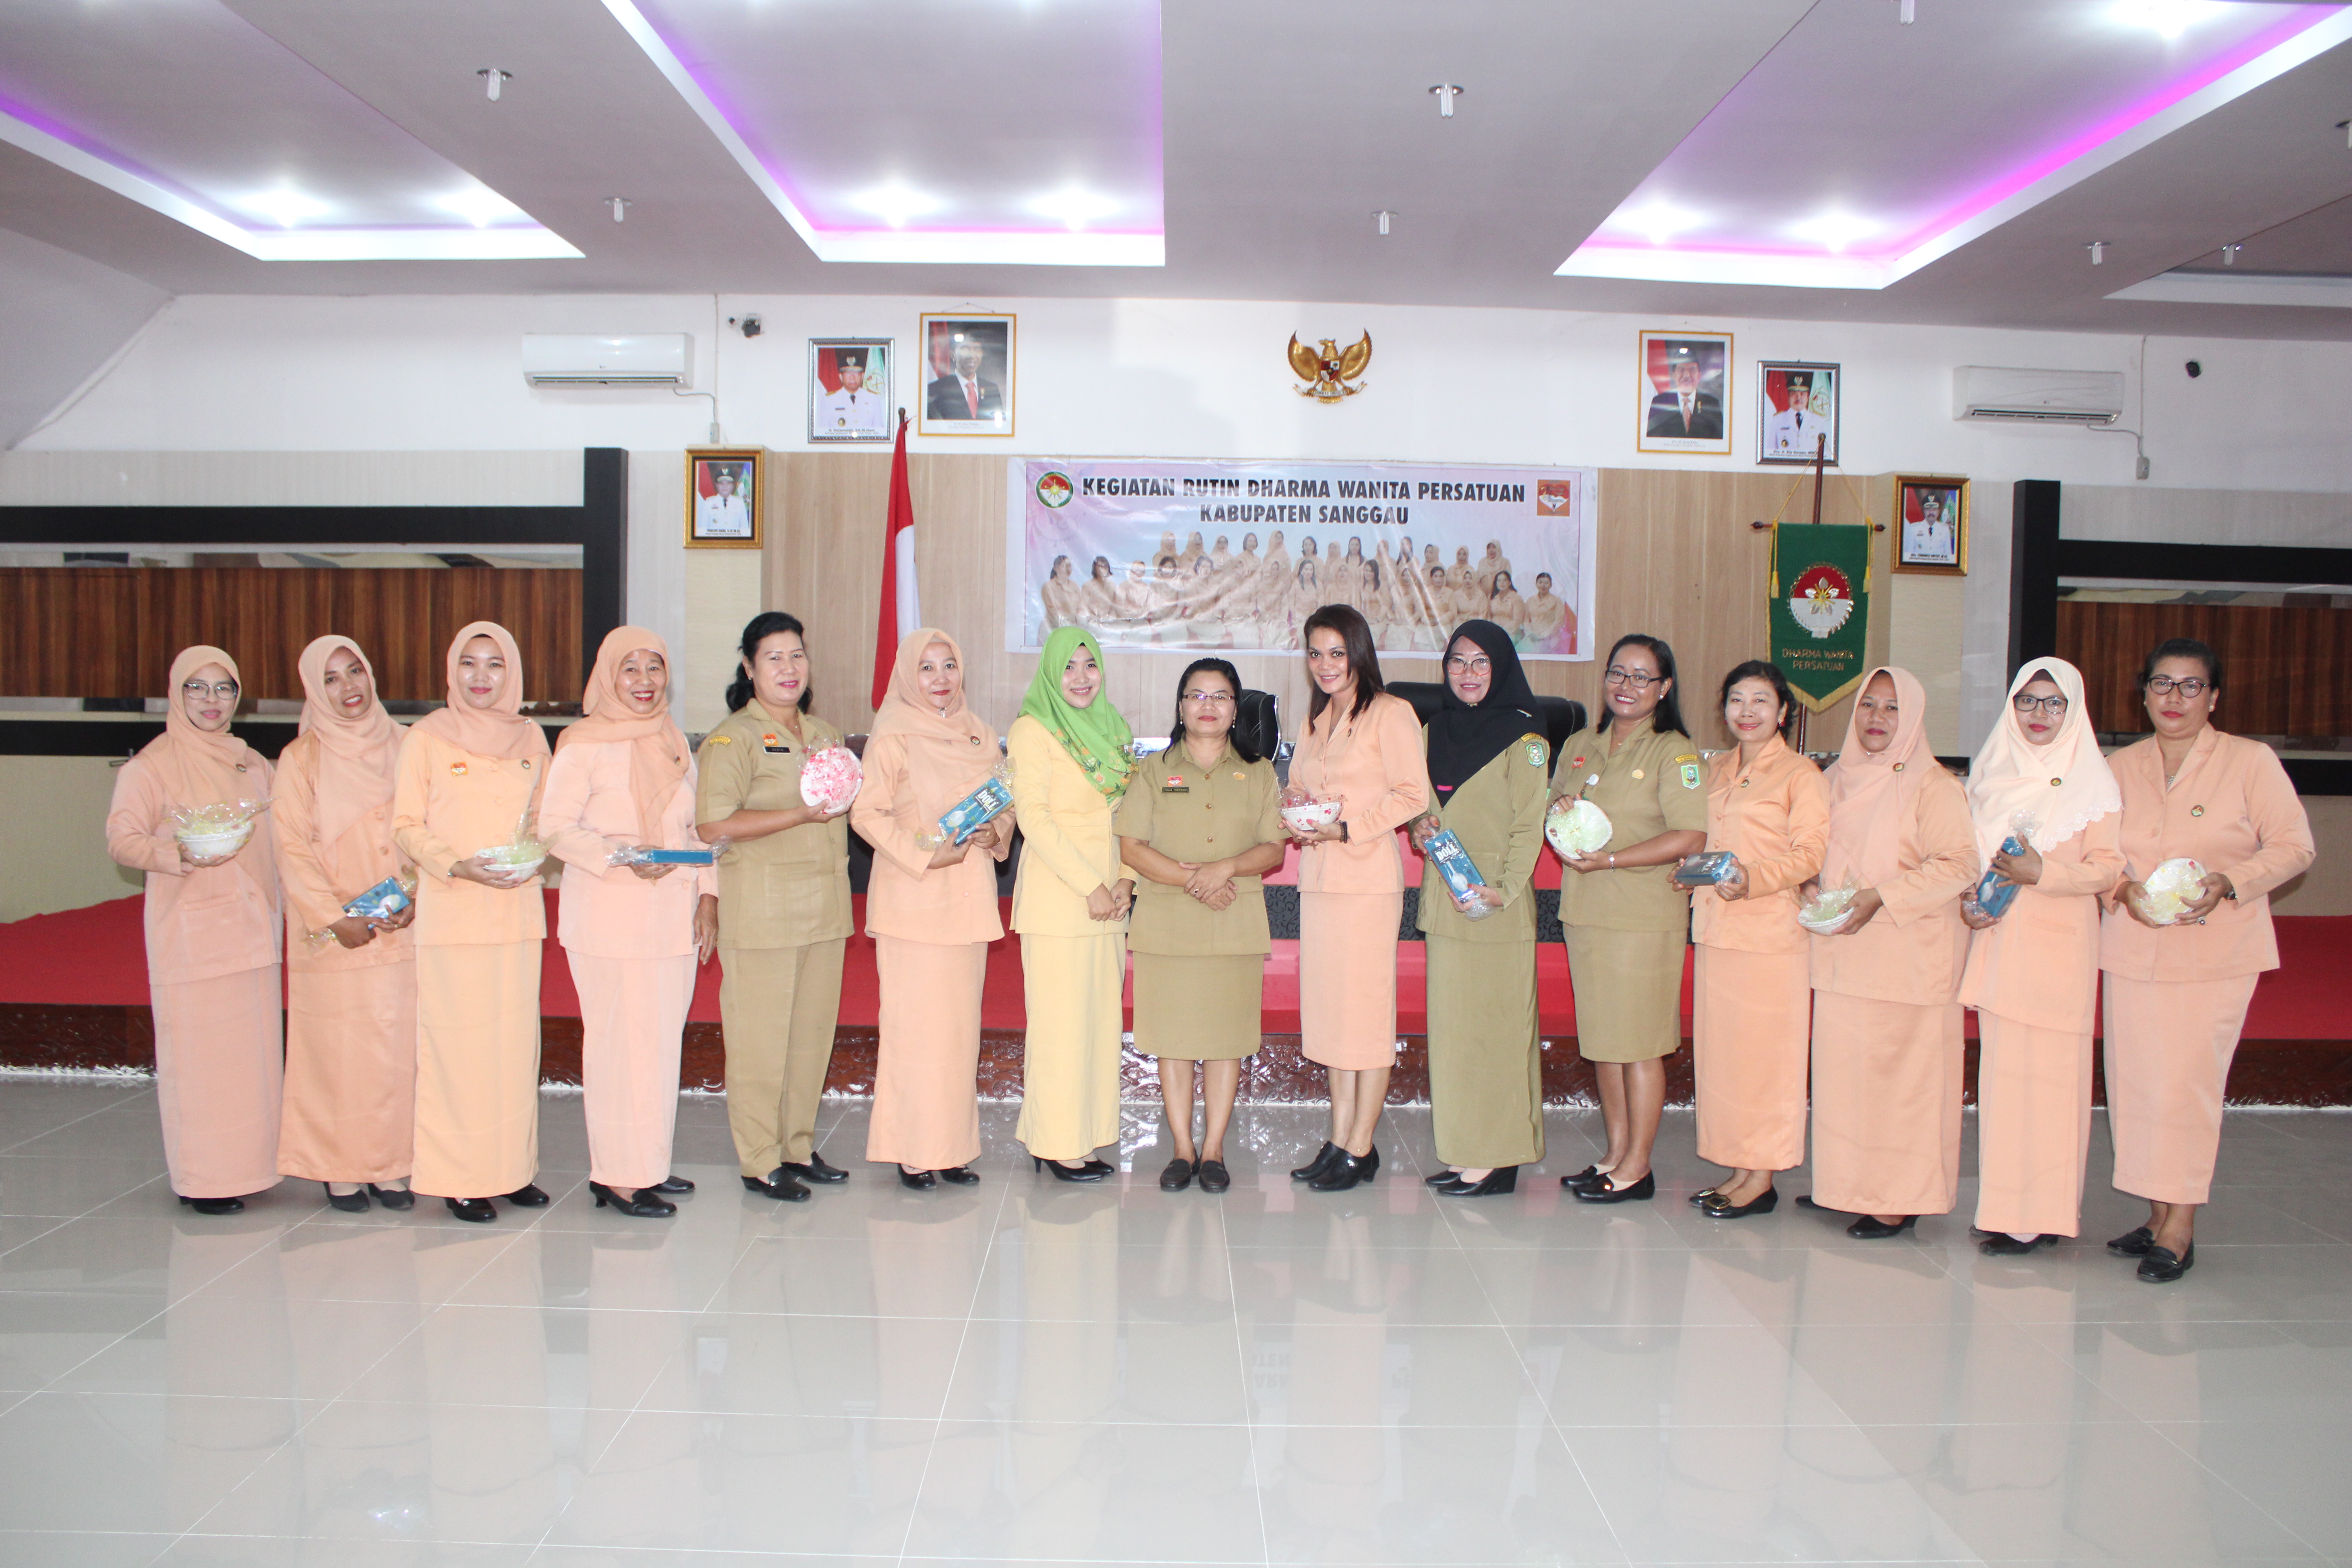 Pertemuan Rutin Dharma Wanita Persatuan Kab.Sanggau 2019